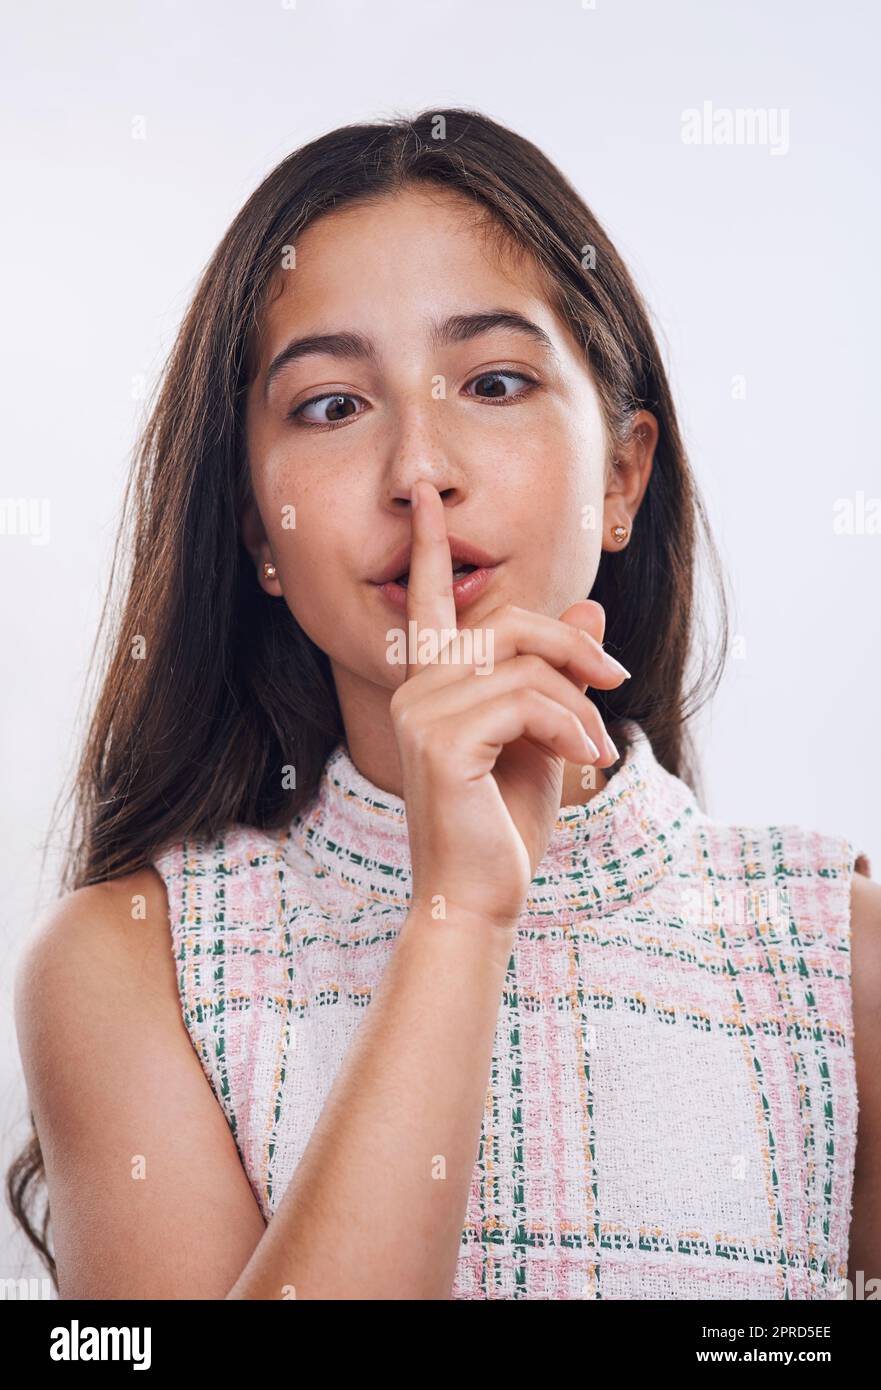 Siate voi stessi. Una ragazza adolescente attraente in piedi con il dito sulle labbra contro uno sfondo bianco studio. Foto Stock